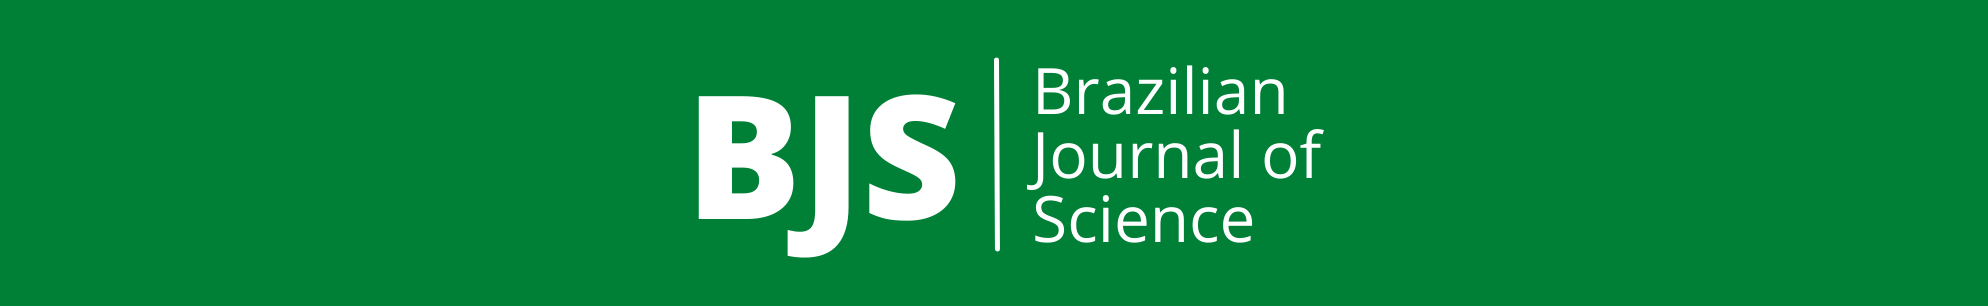 Brazilian Journal of Science